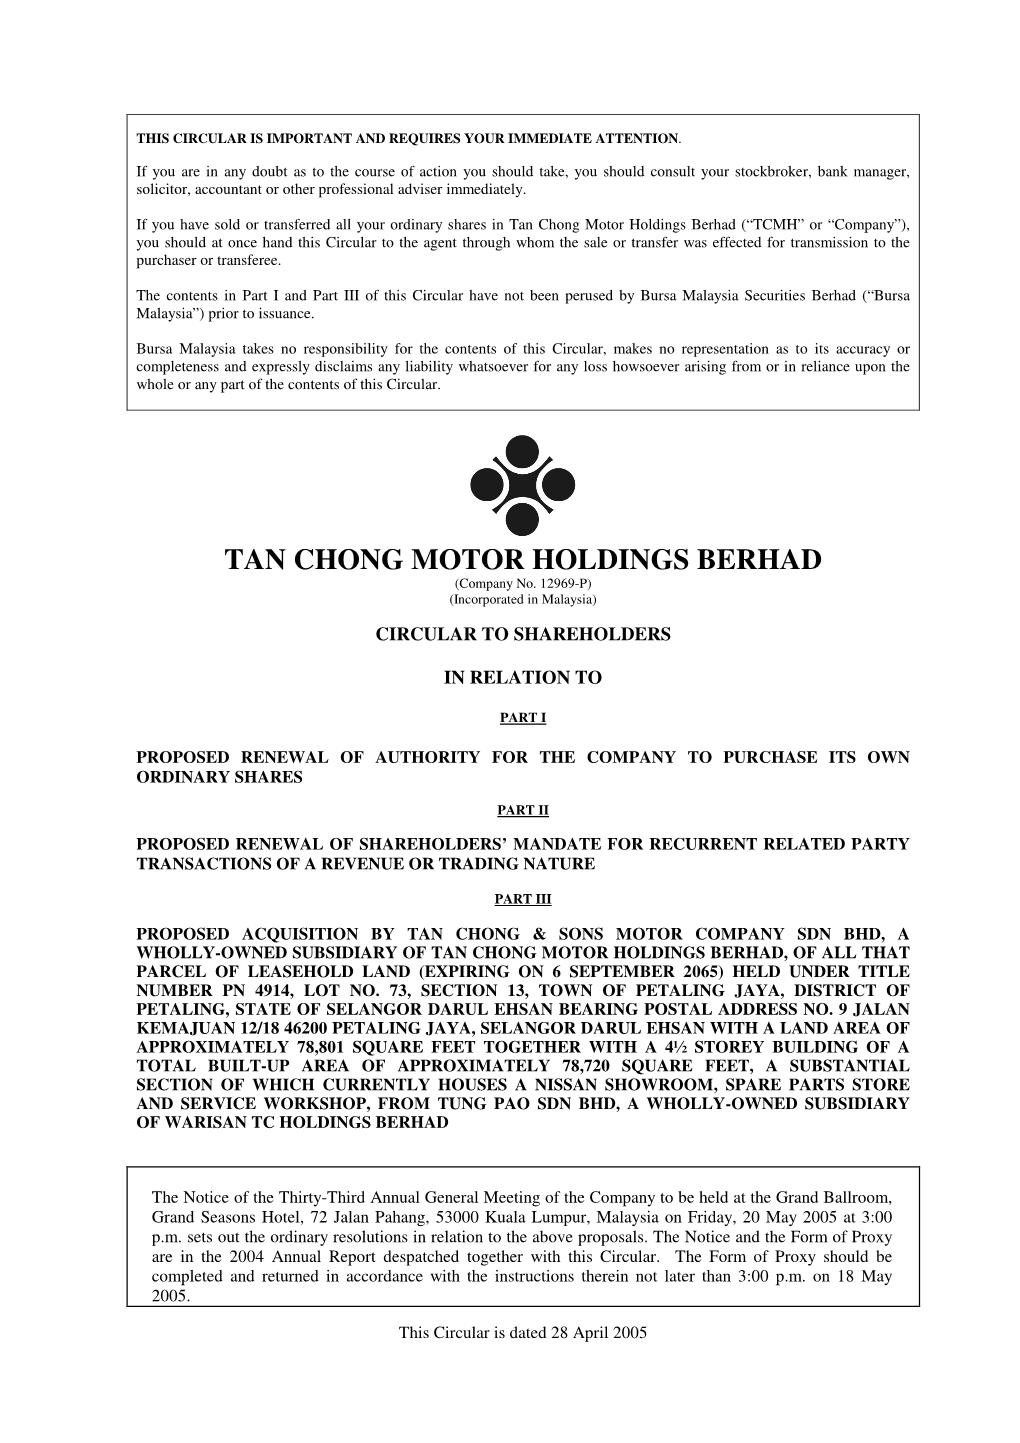 Tan Chong Motor Holdings Berhad